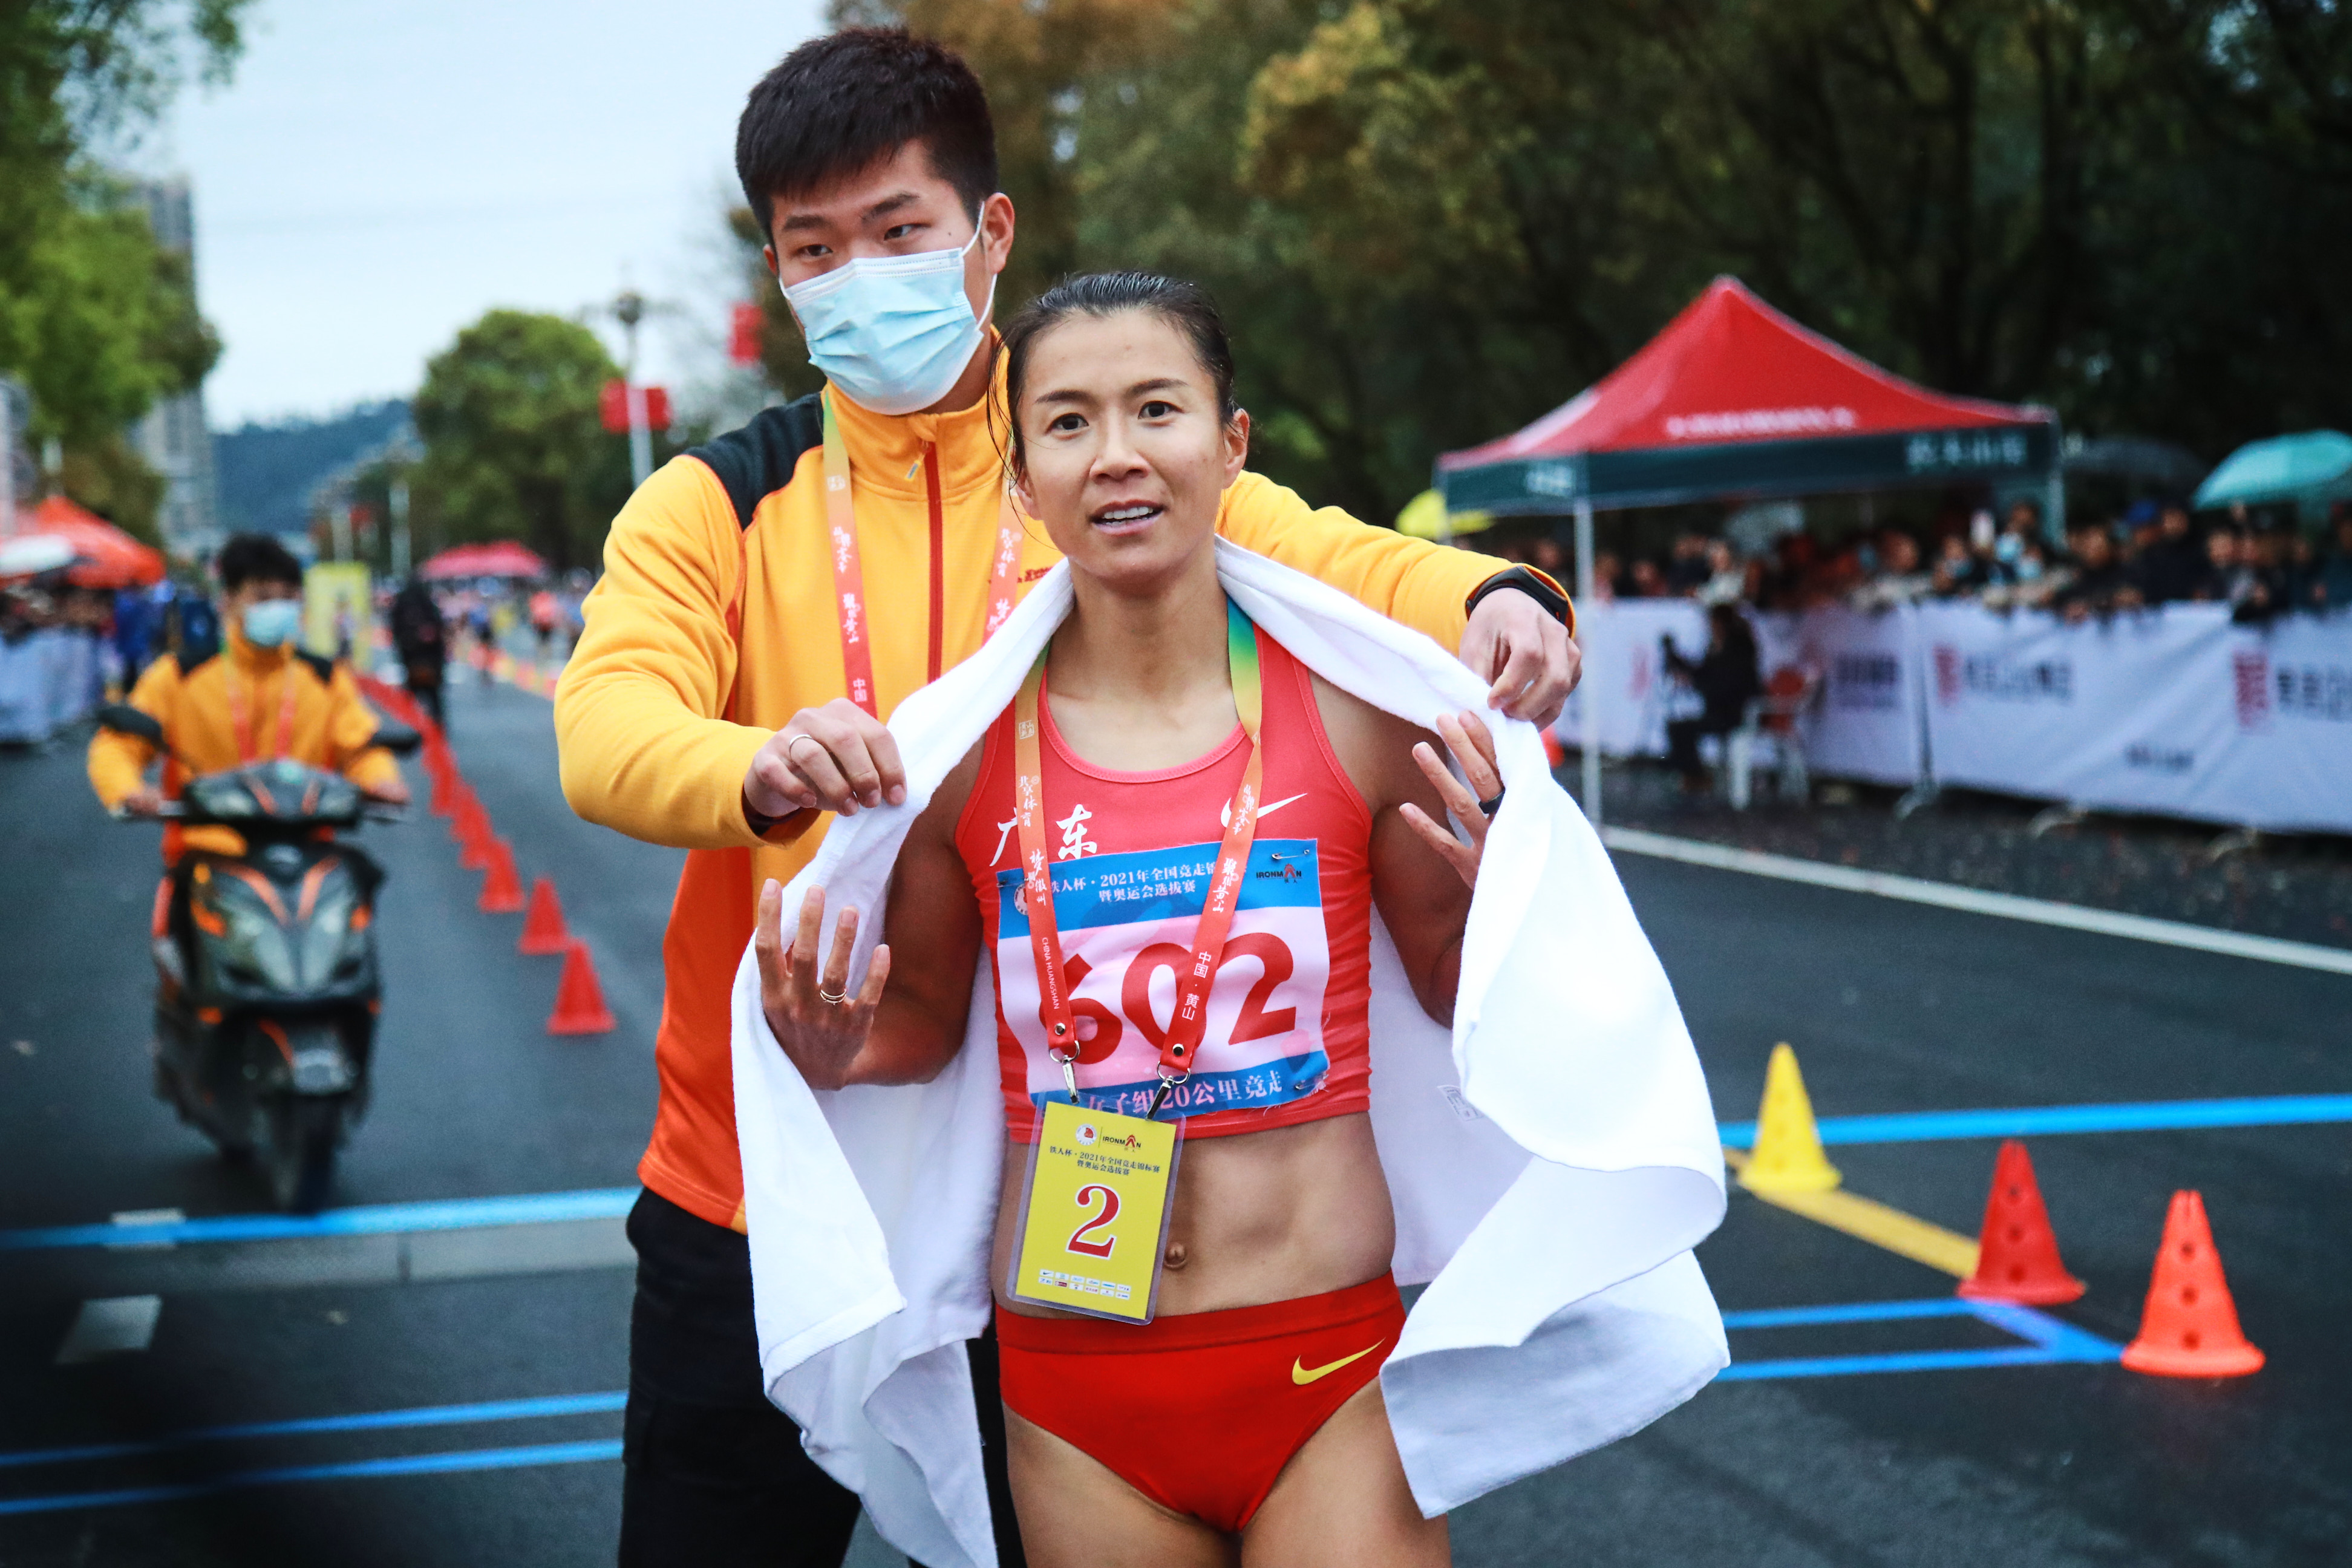 你本传奇为母更刚妈妈选手刘虹20公里竞走摘铜